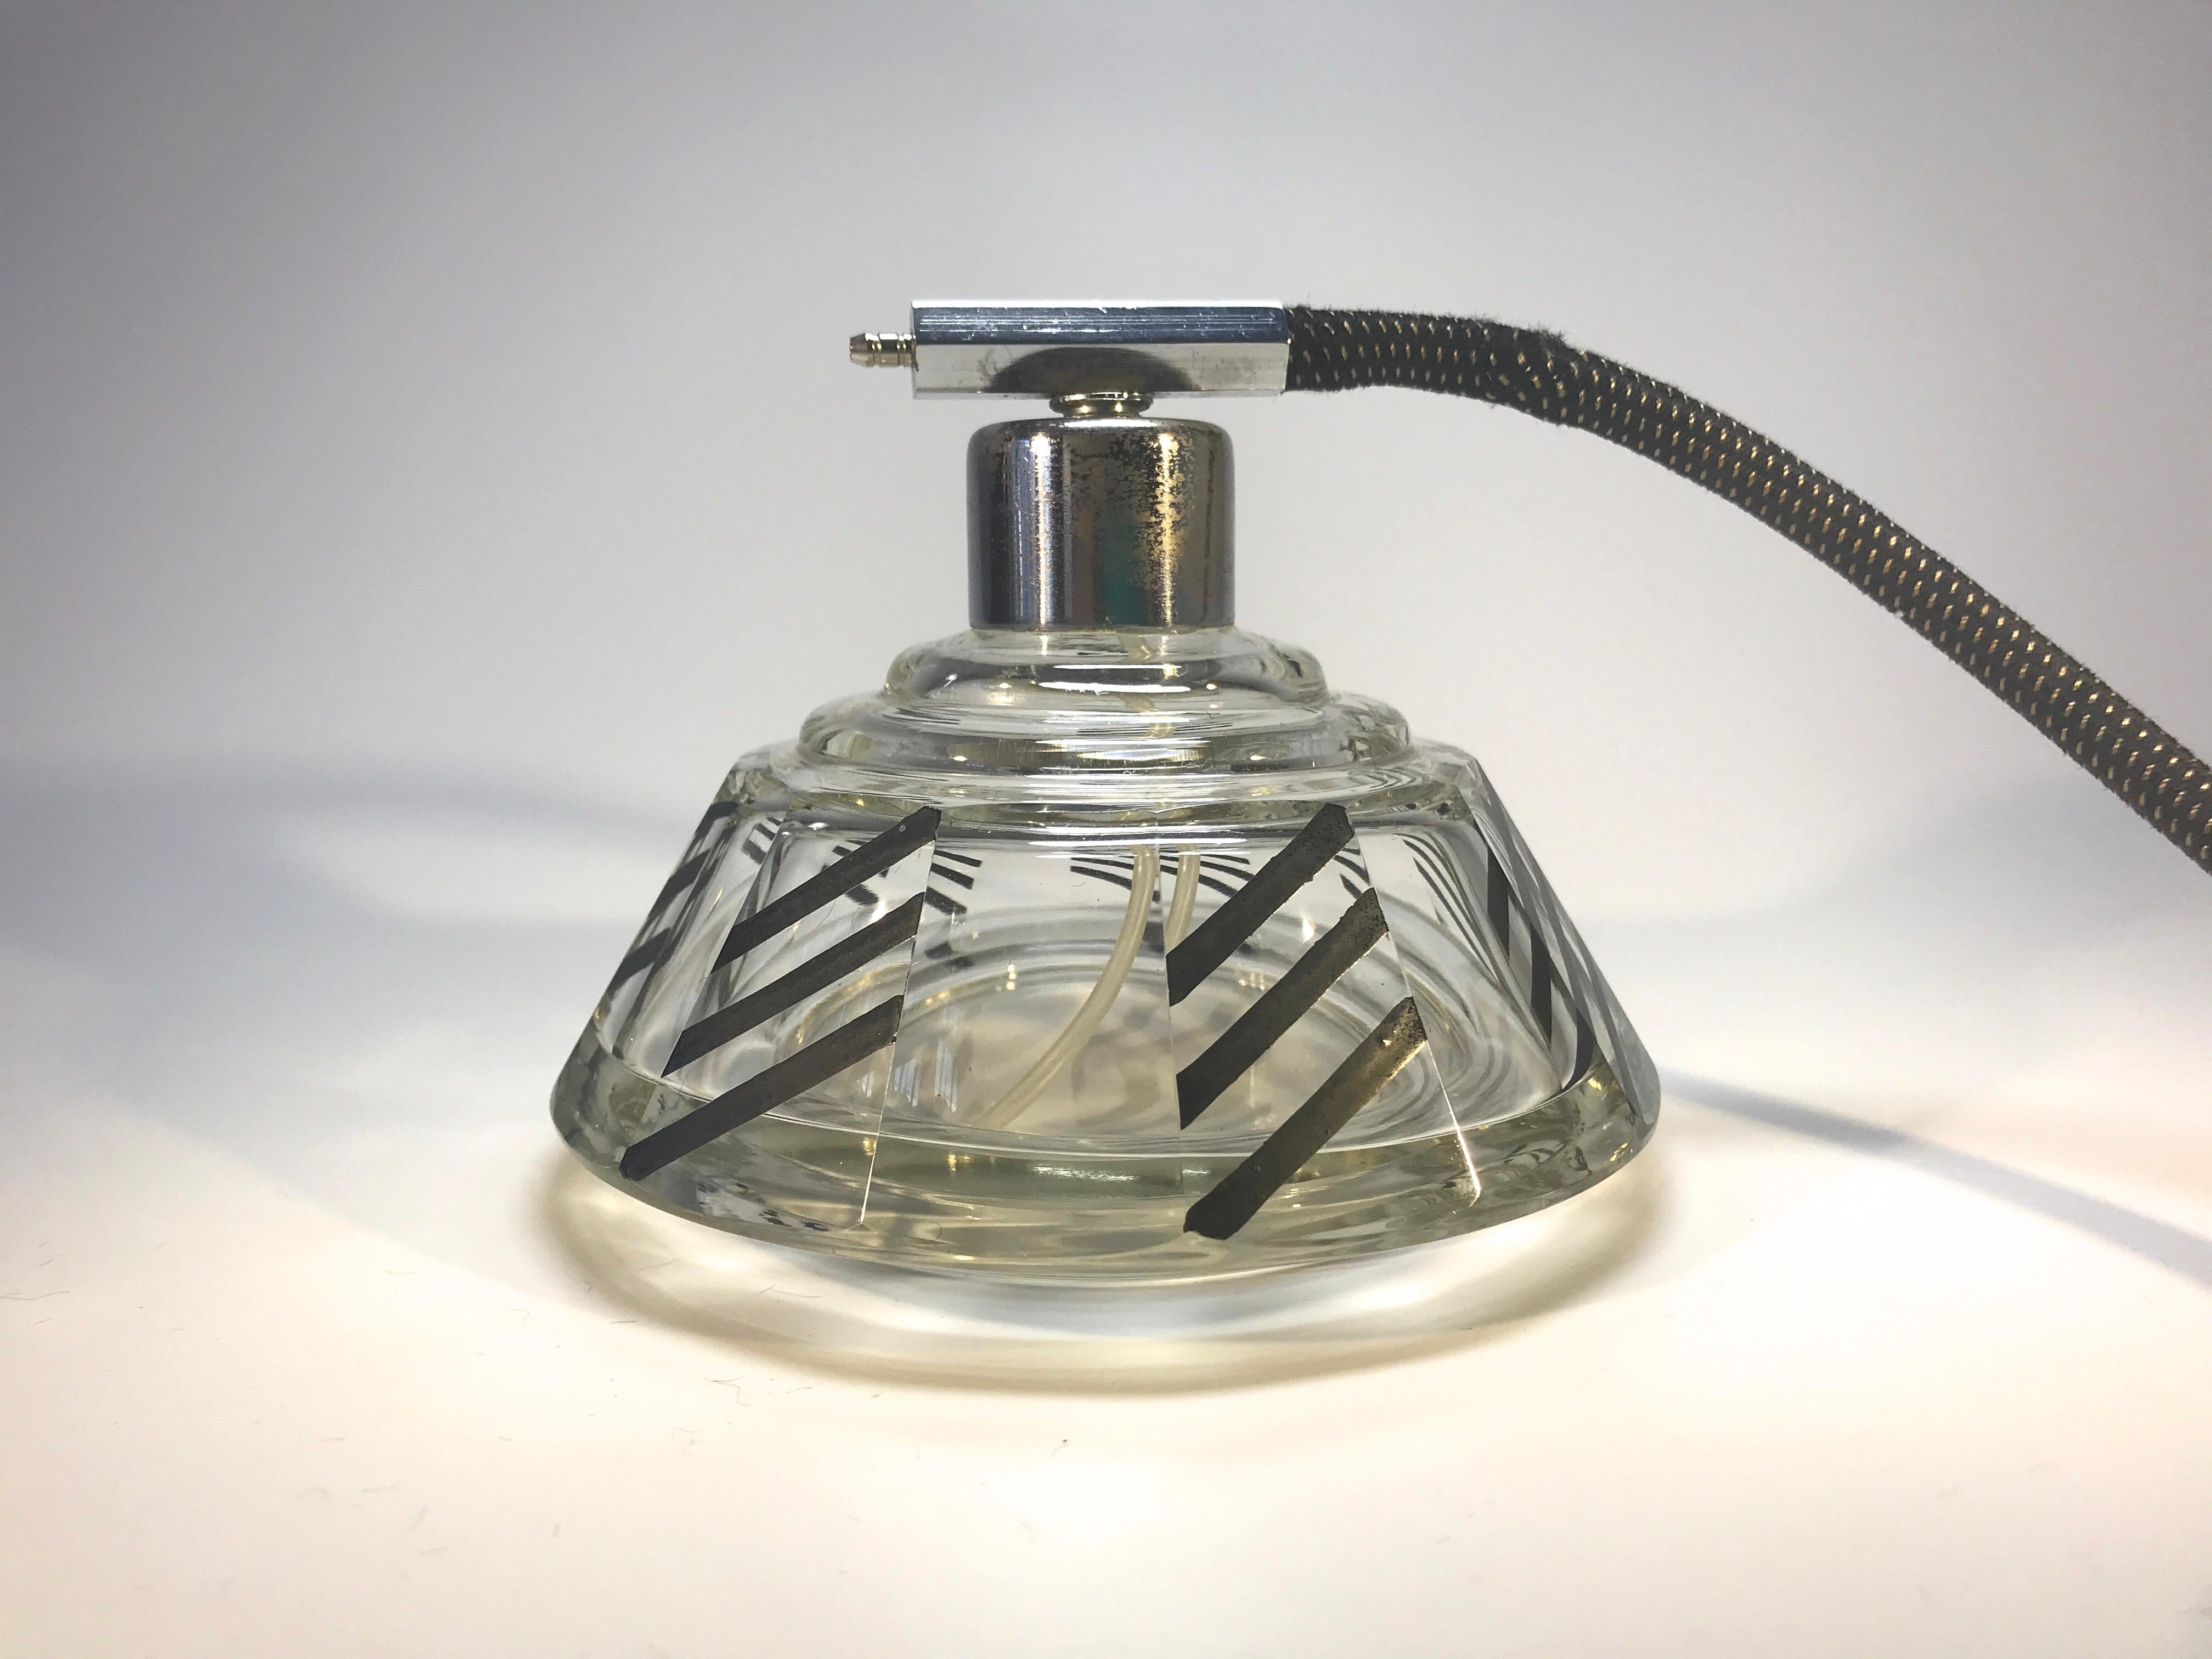 Superbe Karl Palda Art Déco grand vaporisateur de parfum en cristal des années 30
Un impressionnant flacon rond transparent avec des lignes géométriques audacieuses en émail noir, en excellent état
Ampoule et gland en soie d'origine
Vintage Bohème,